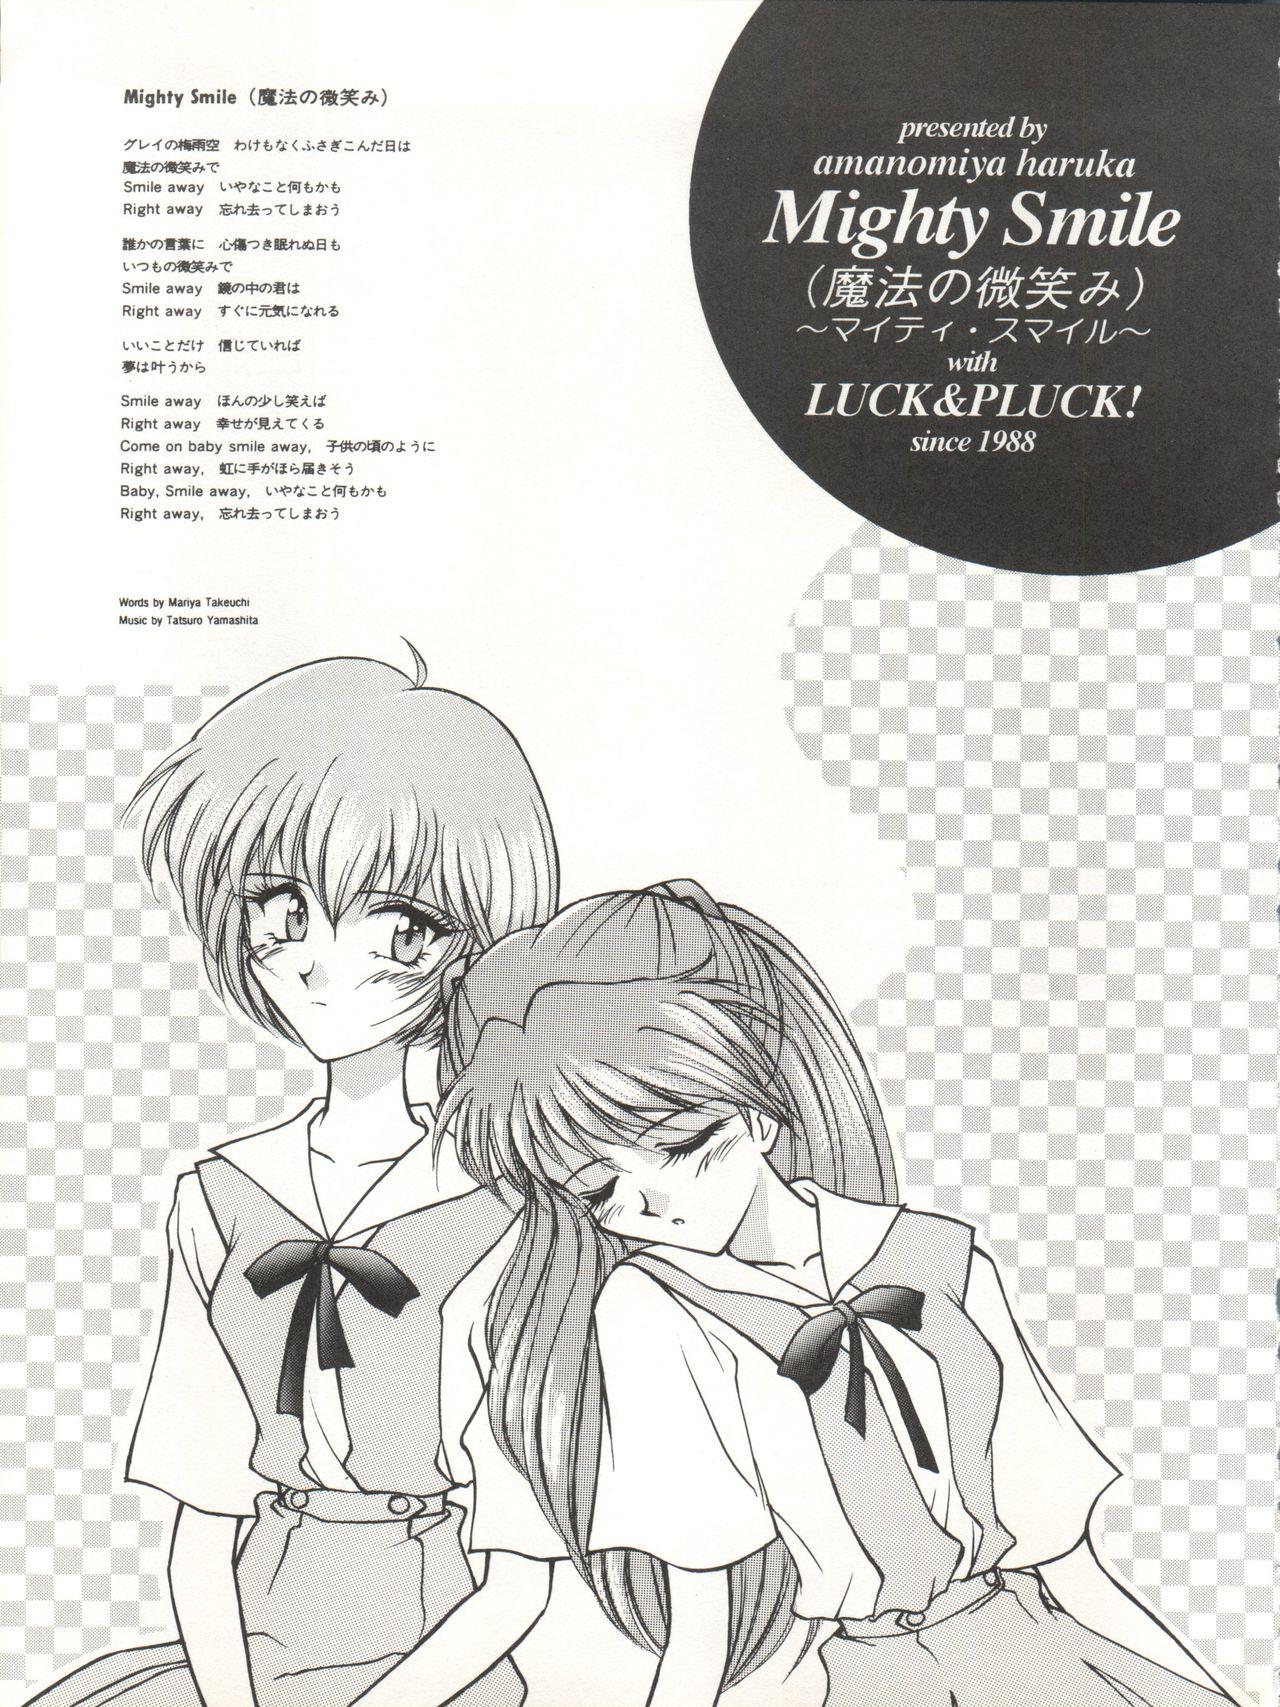 Mighty Smile - Mahou no Hohoemi 3